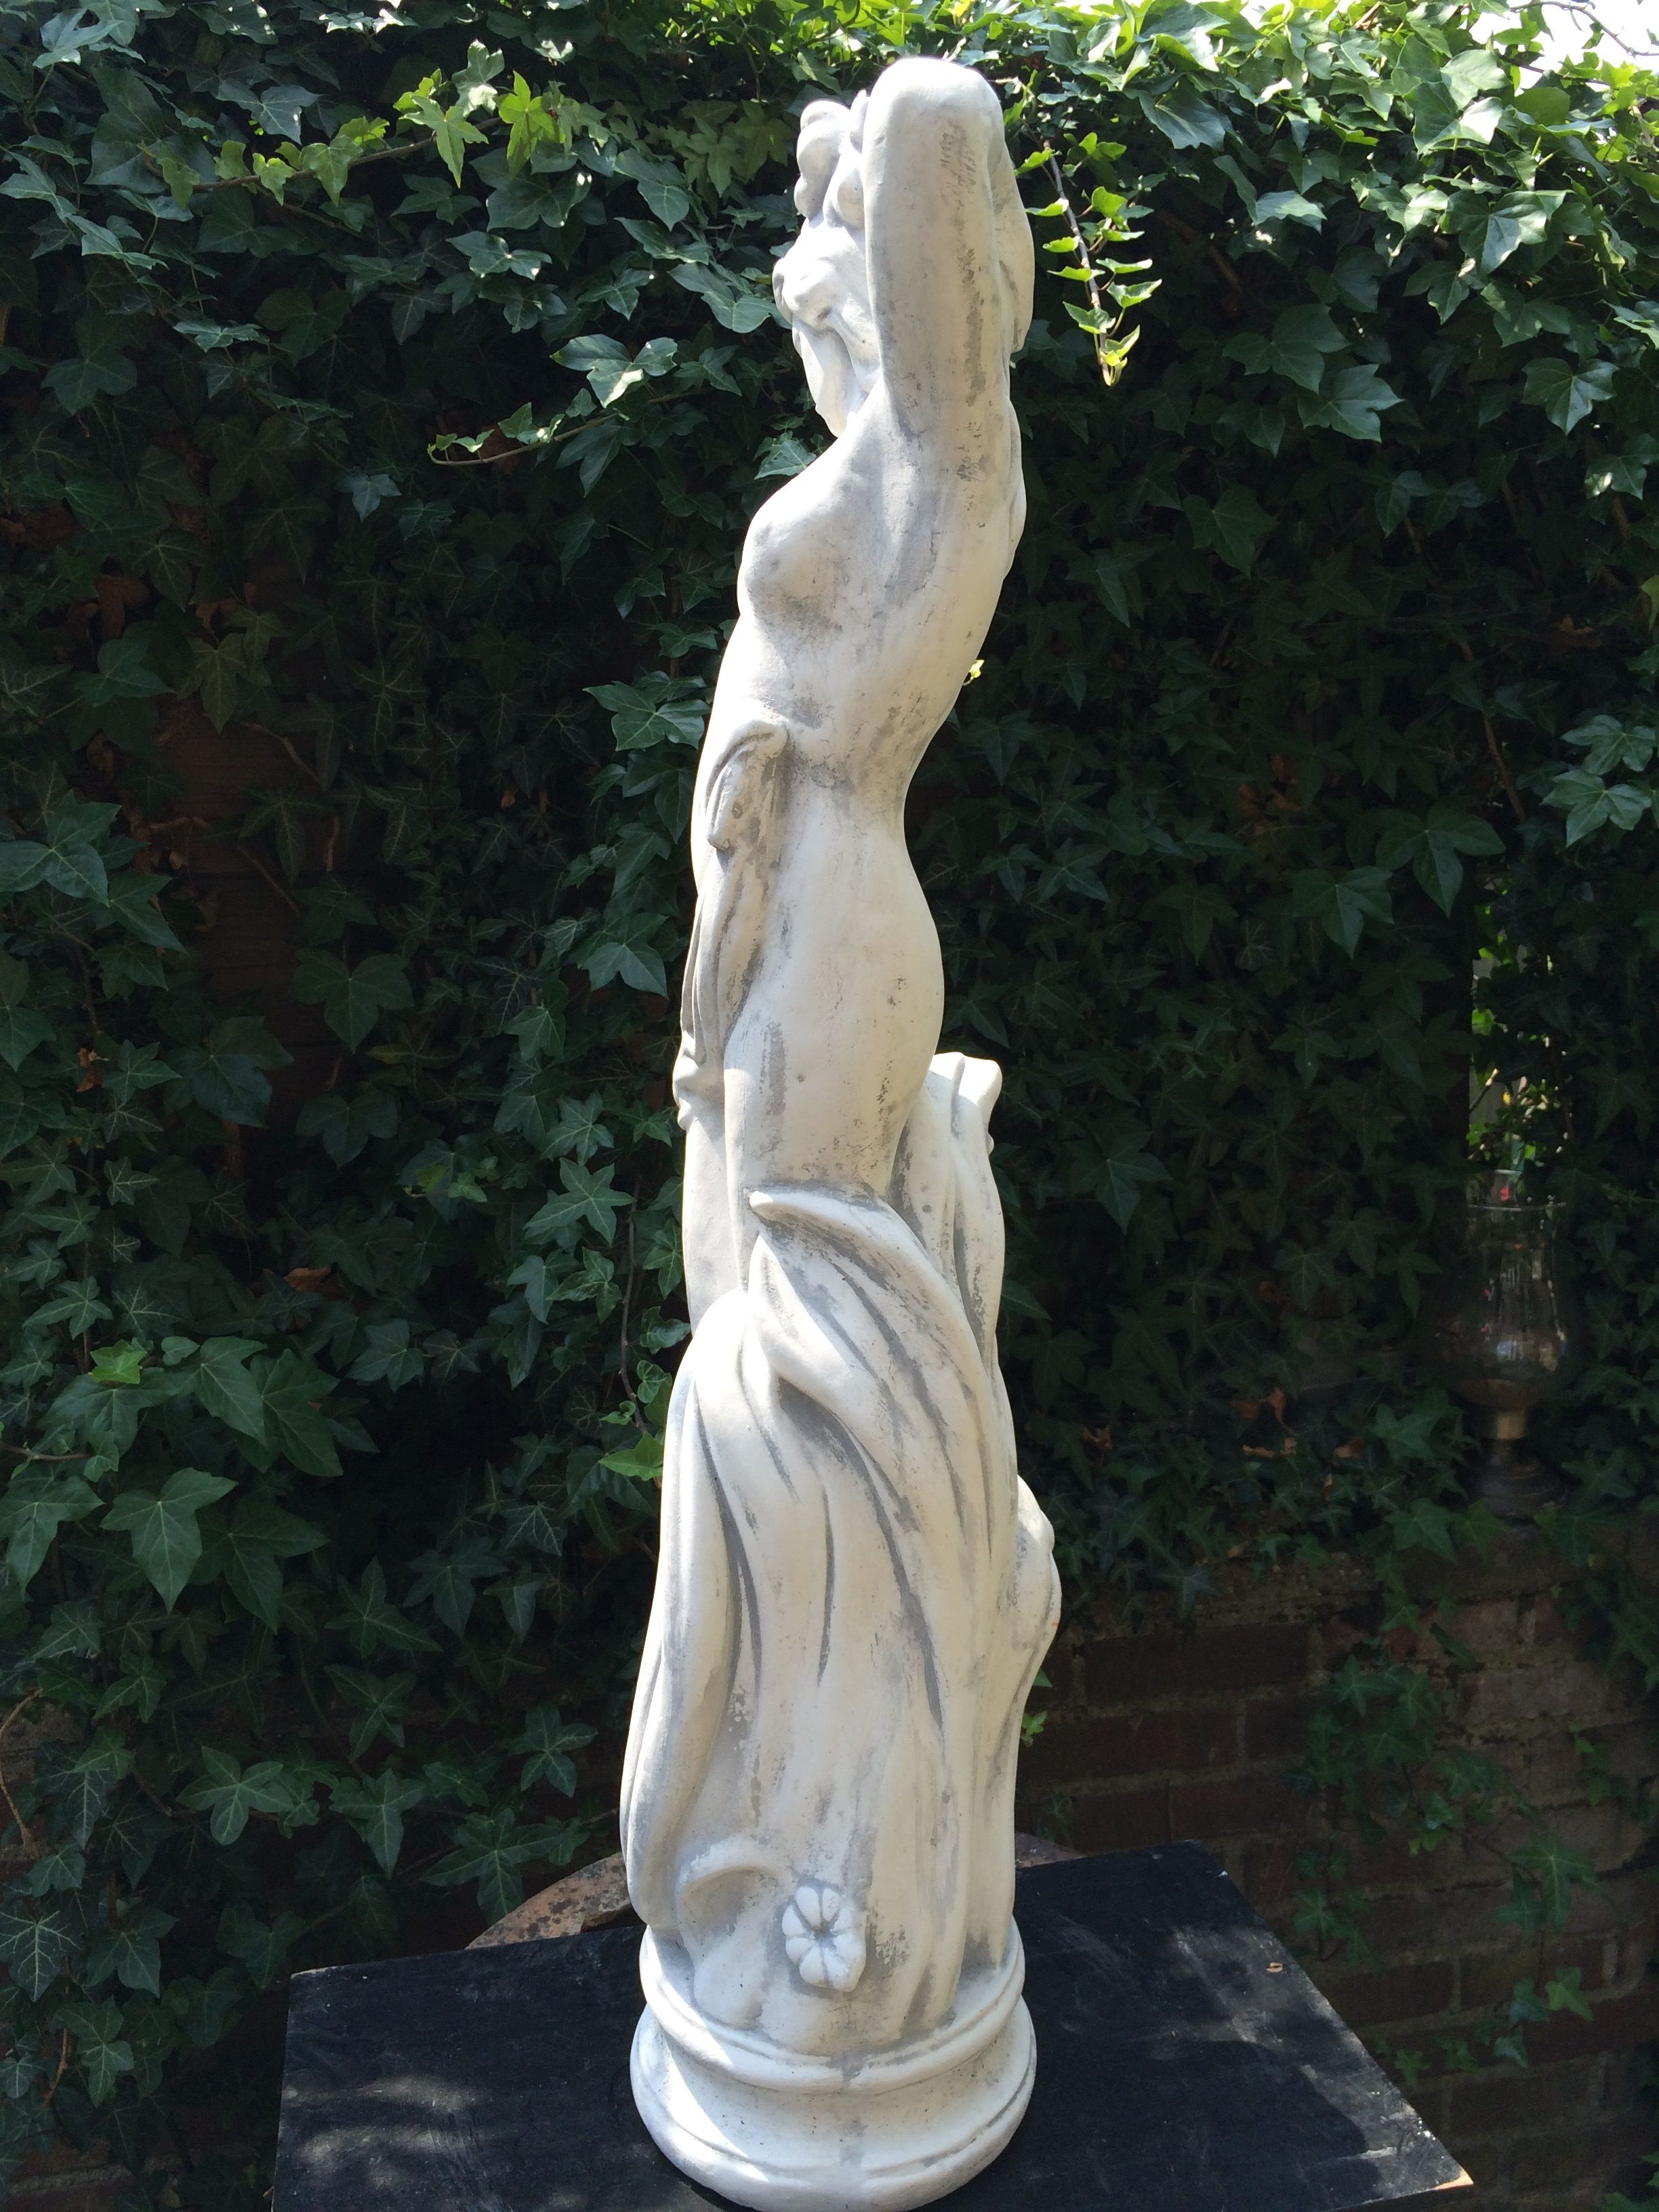 Prachtig vol wit stenen beeld van een staande dame, super mooi voor in de tuin!!